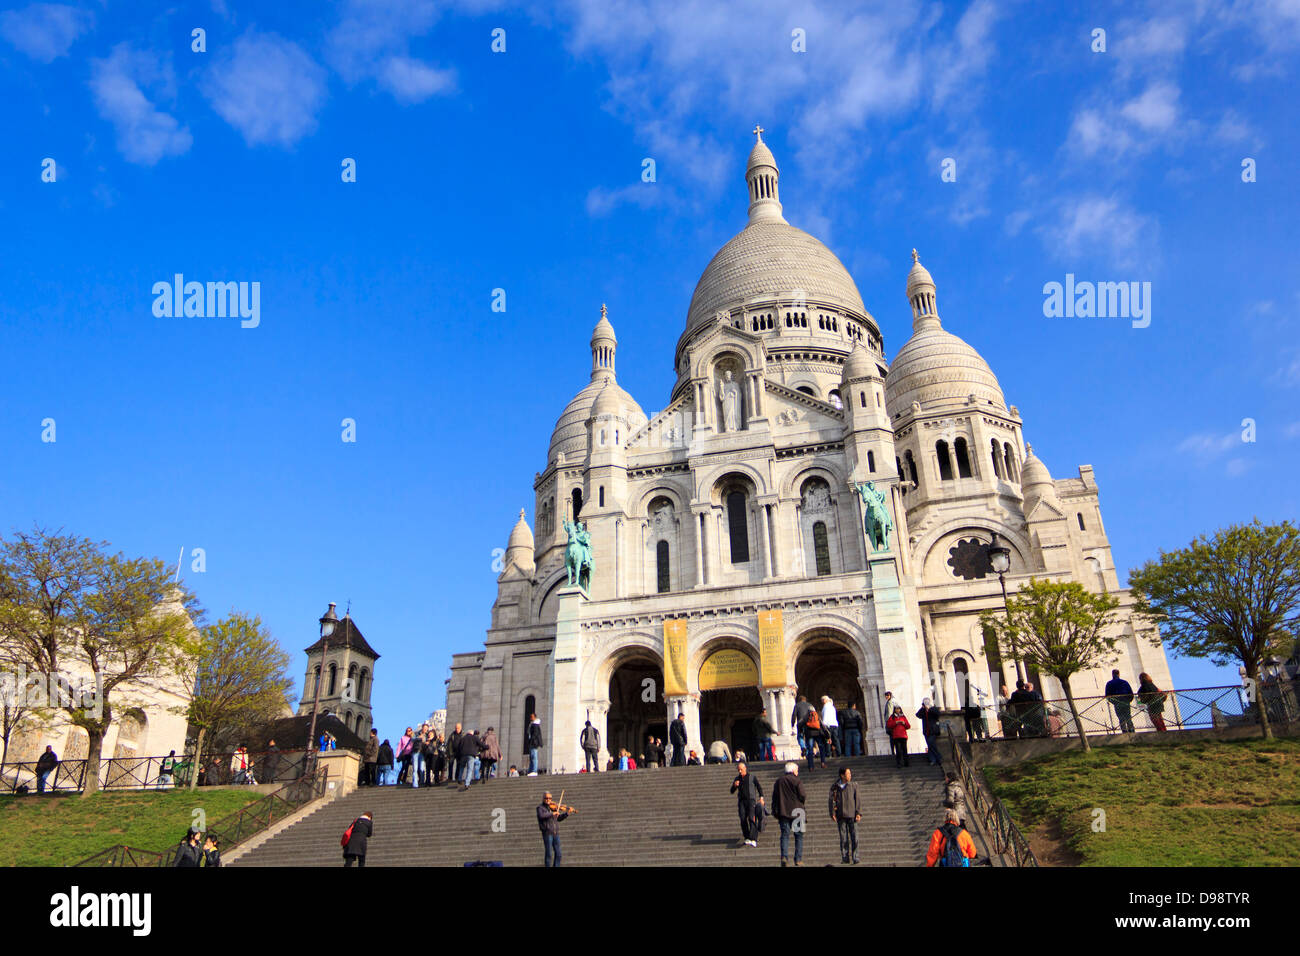 La basilique du Sacré-Cœur de Paris, communément connu sous le nom de Basilique du Sacré-Cœur, Paris, France. Banque D'Images